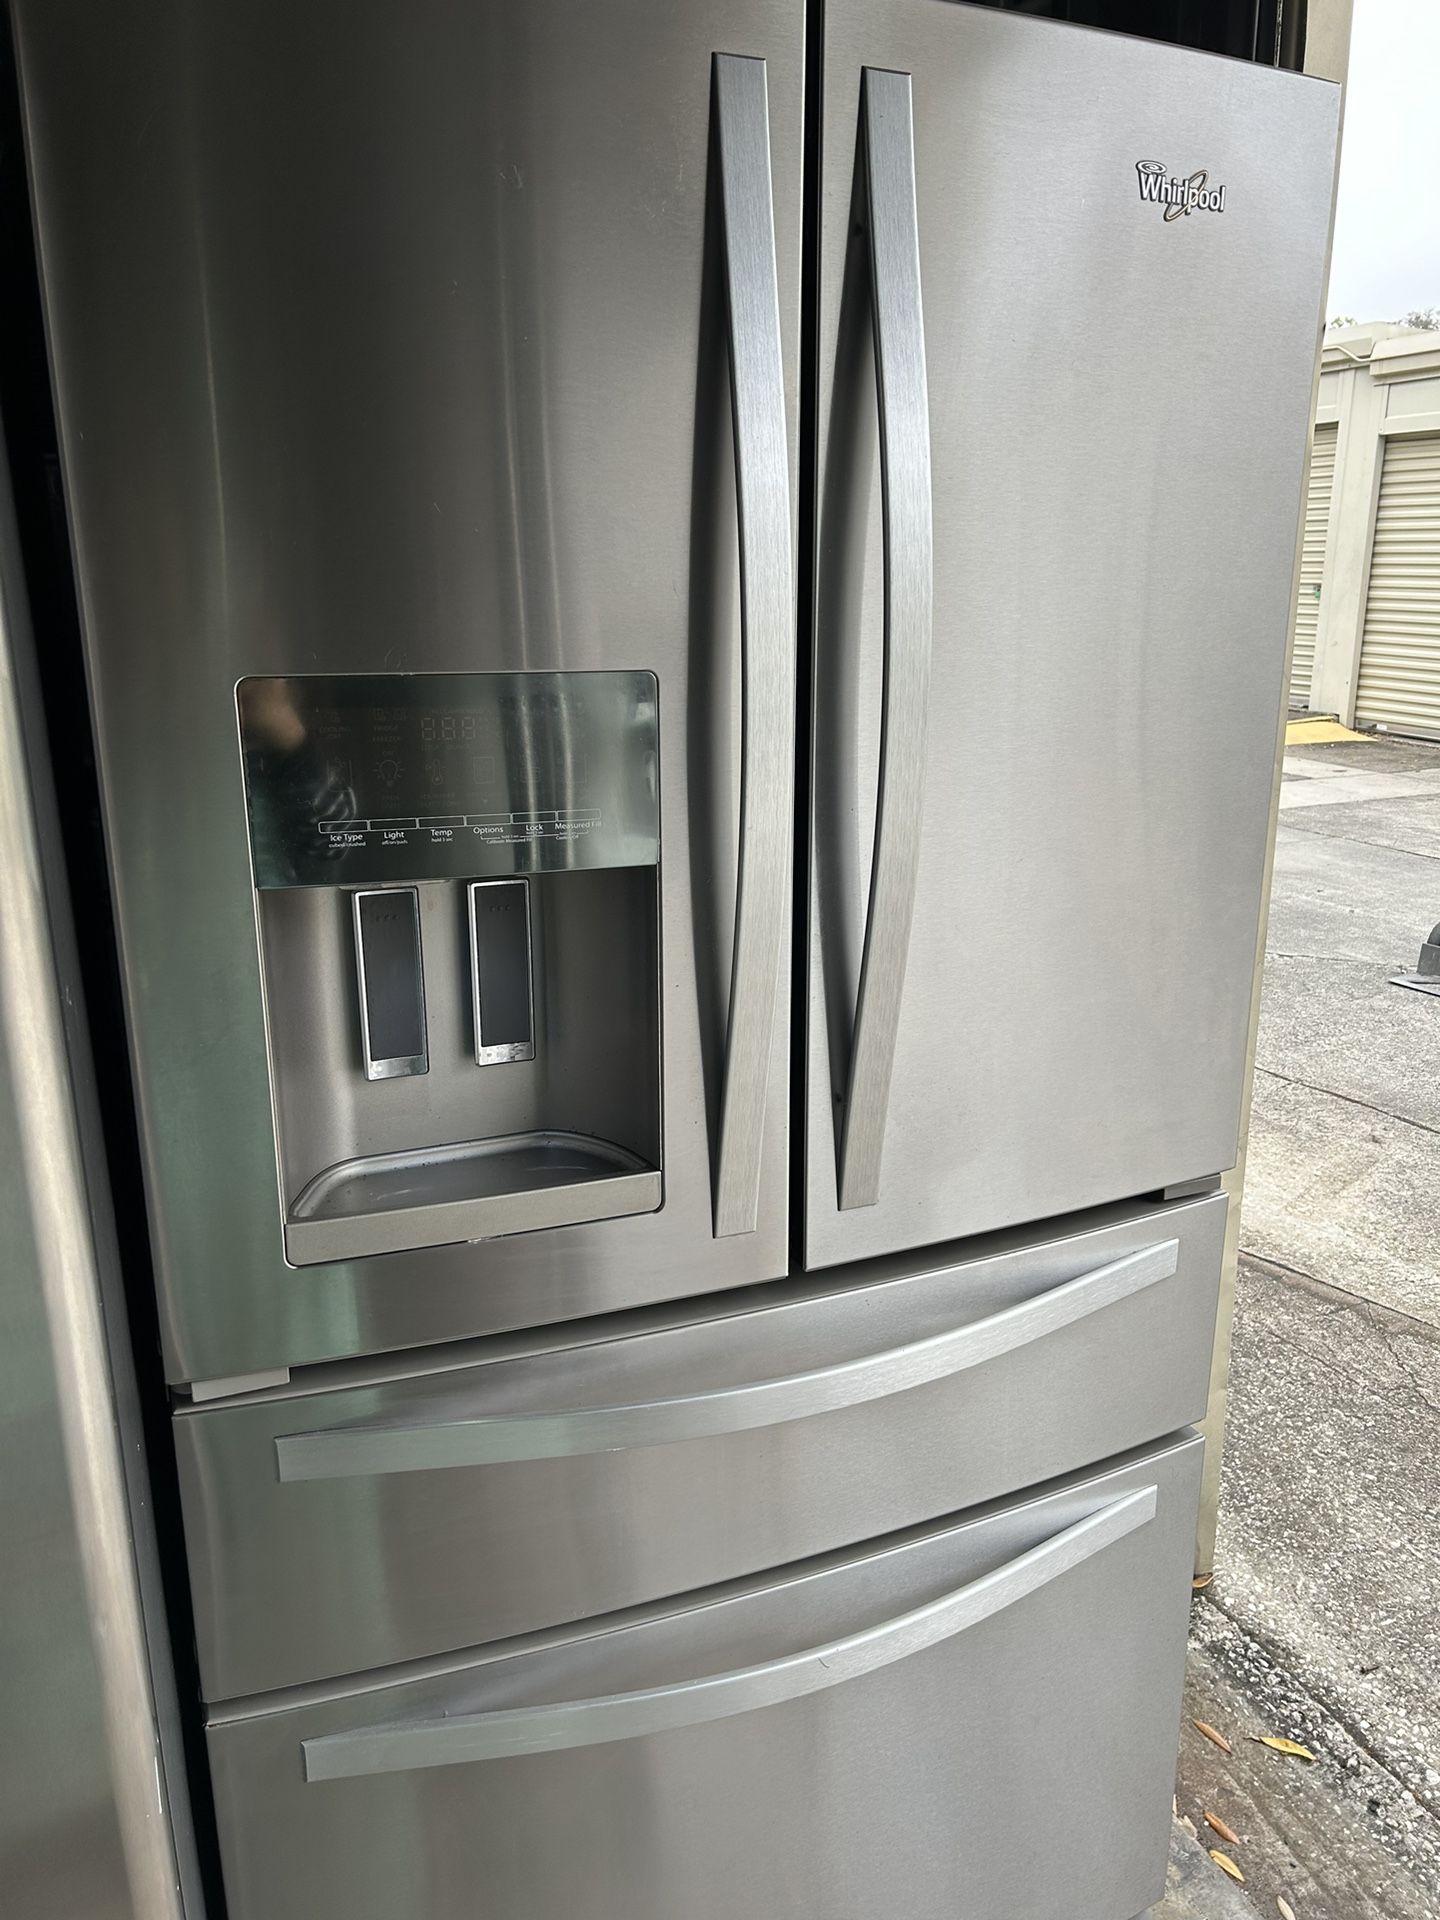 4 Door Refrigerator 